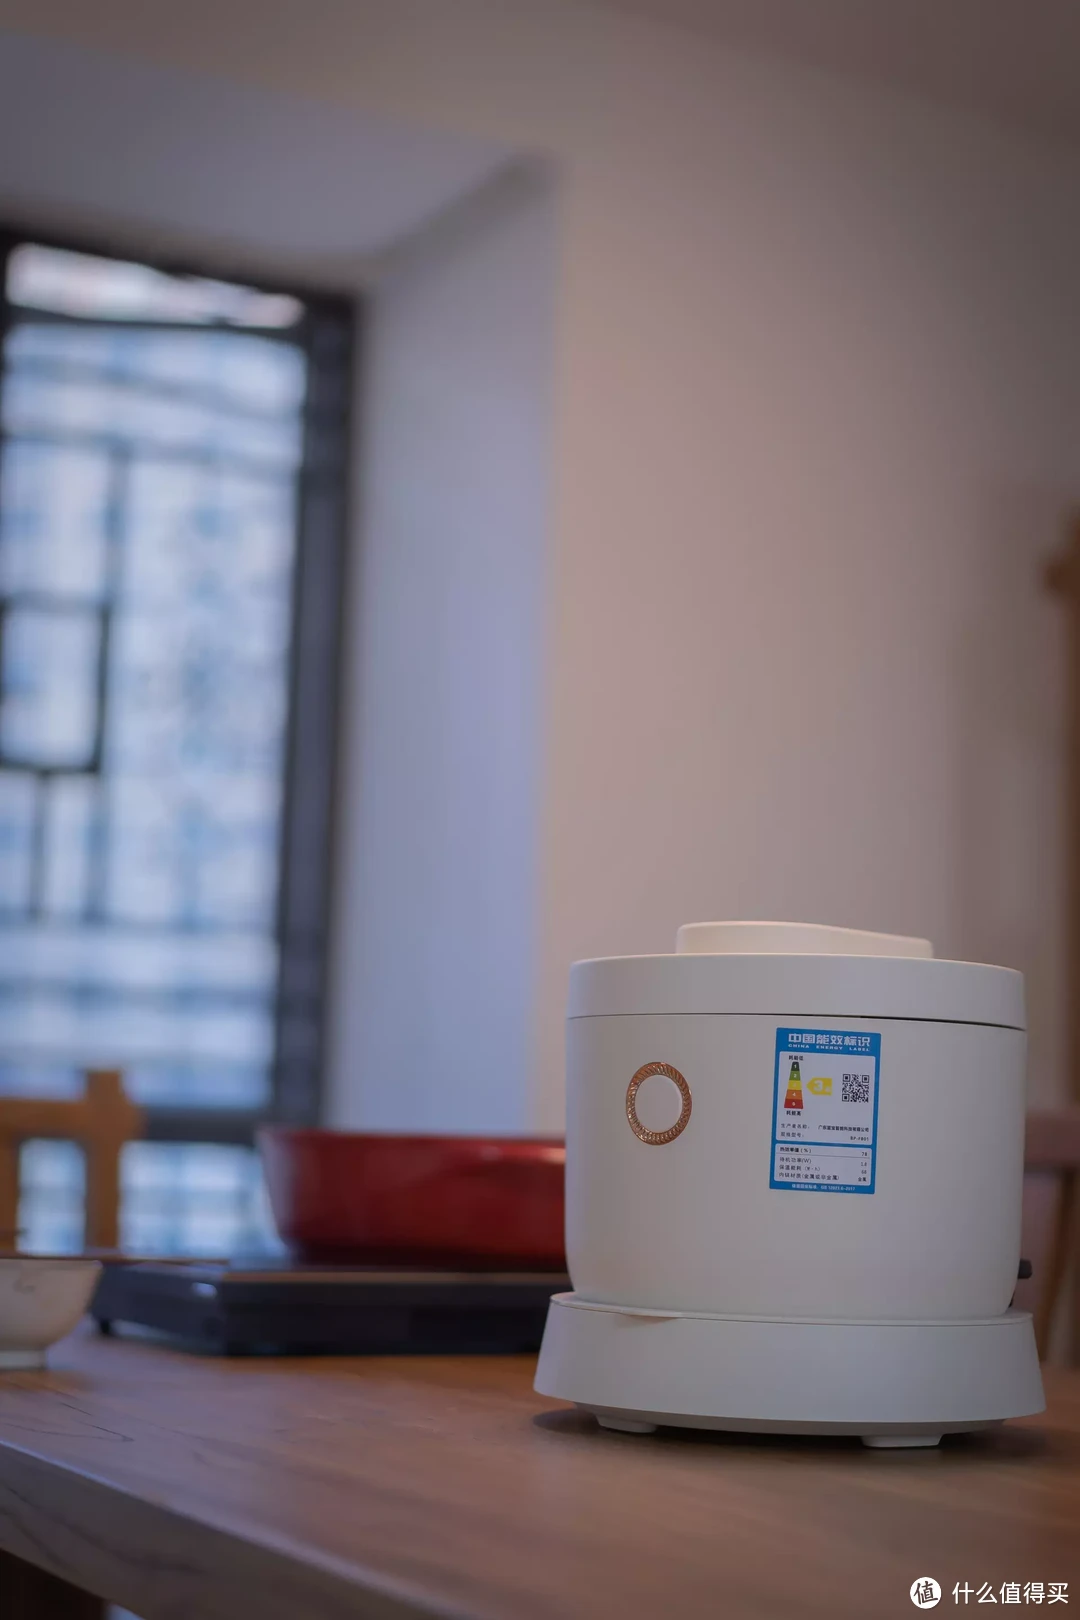 蓝宝蒸汽米汤电饭煲上手：一款能煮沥米饭、自动沥水的电饭煲